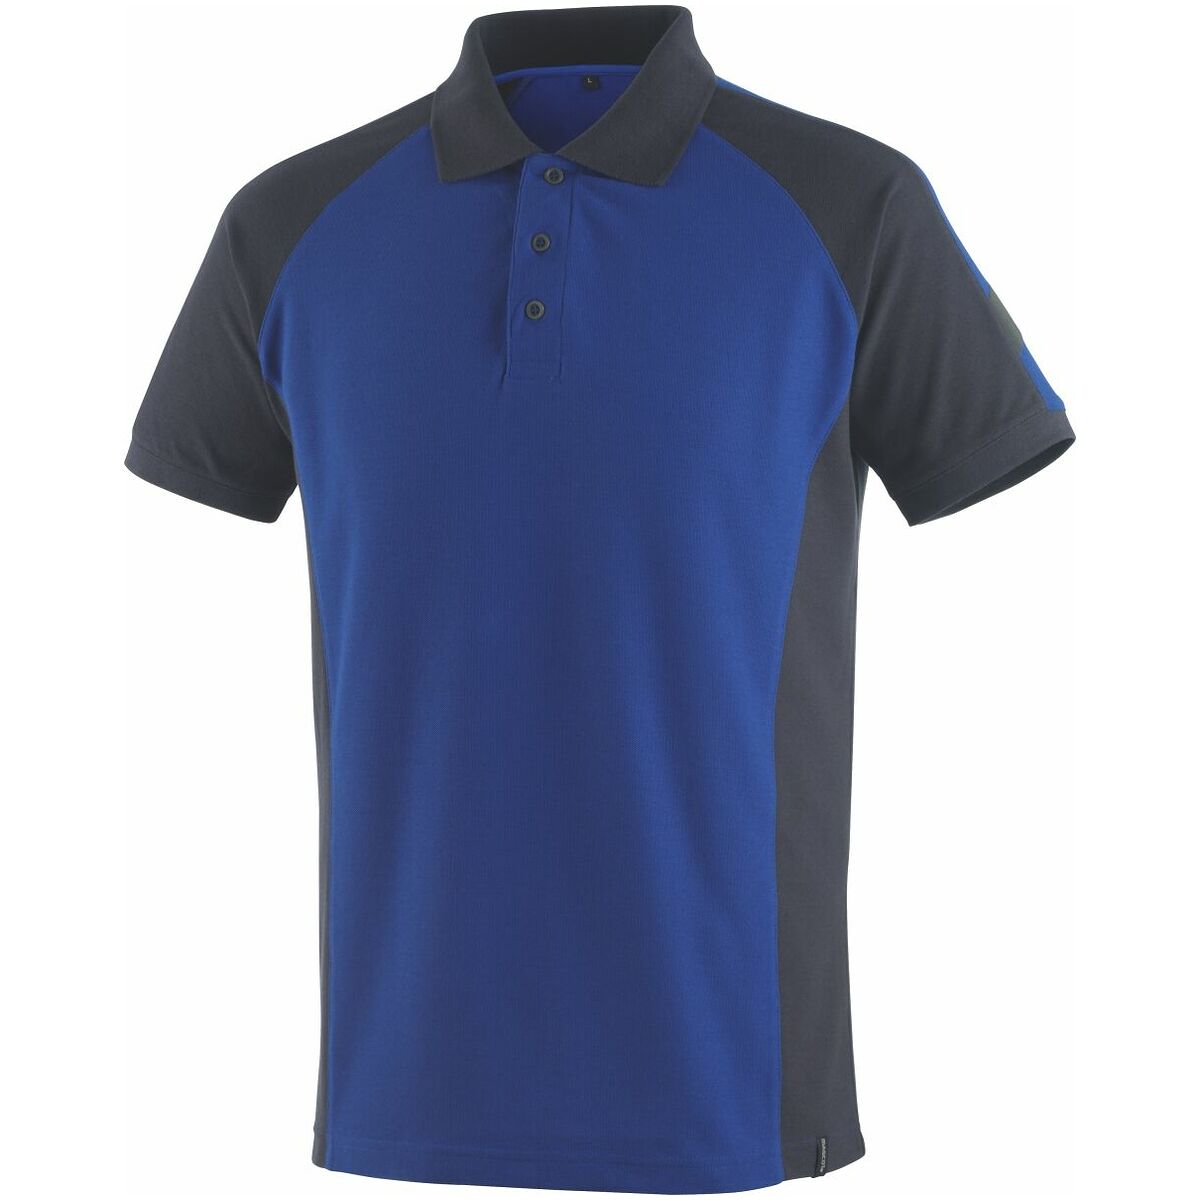 Polo marškinėliai Bottrop mėlynos / tamsiai mėlynos spalvos